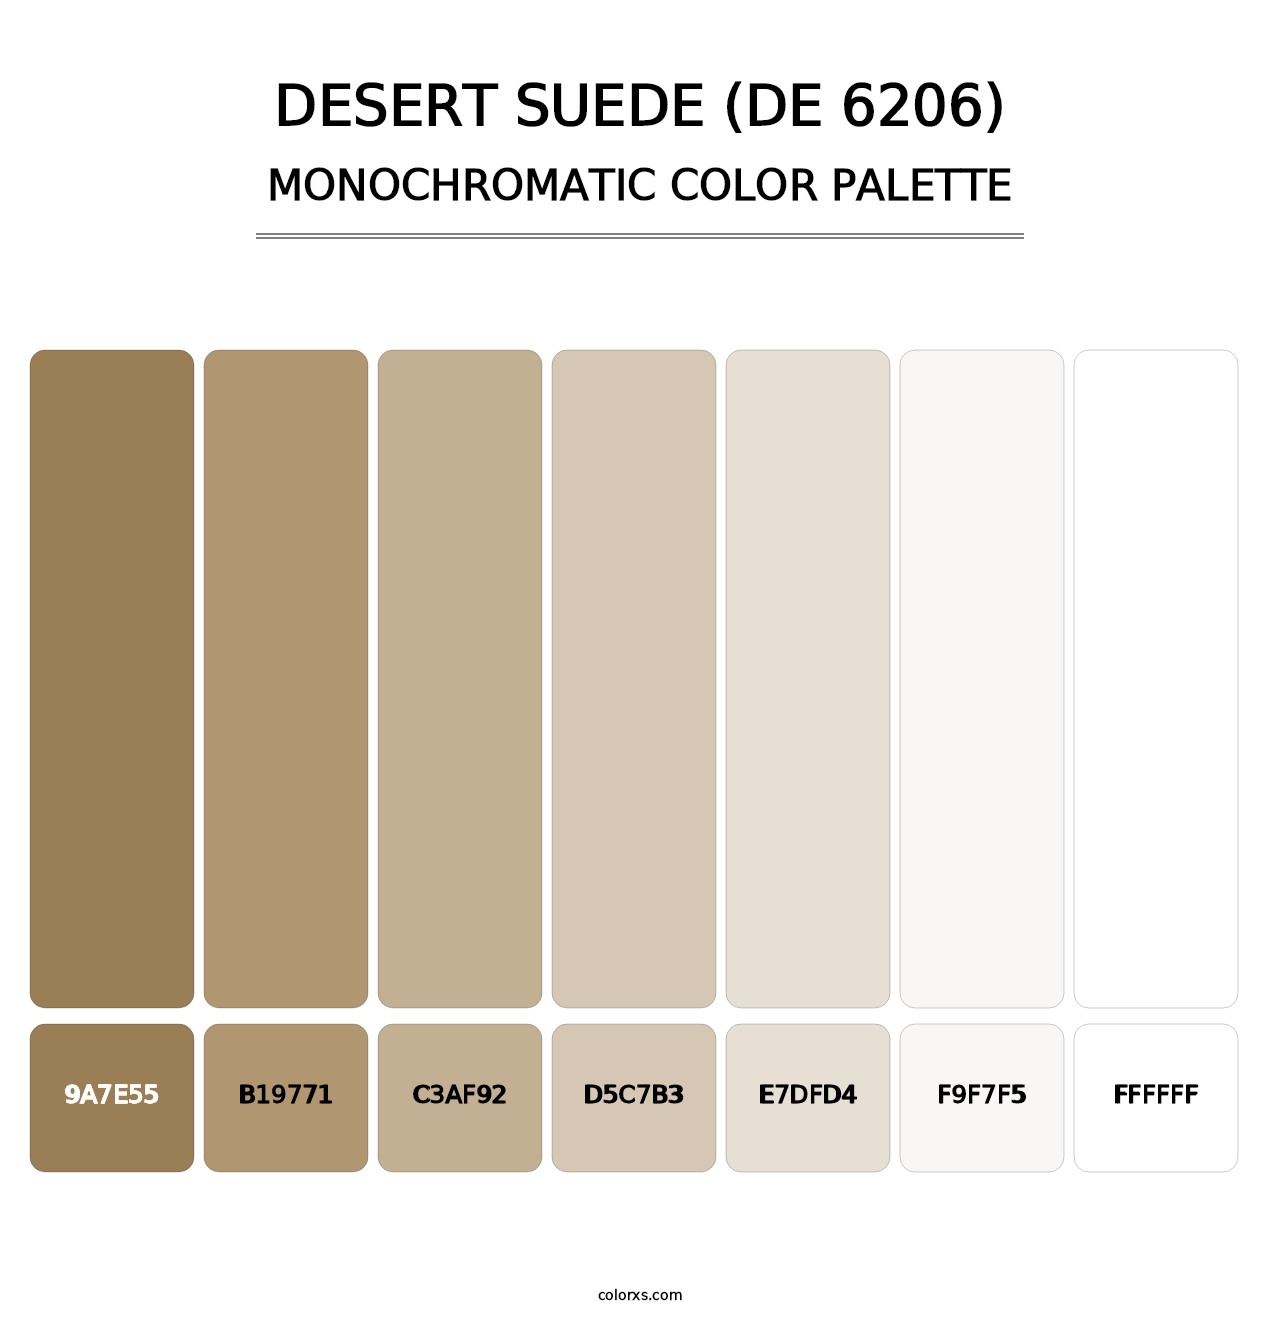 Desert Suede (DE 6206) - Monochromatic Color Palette